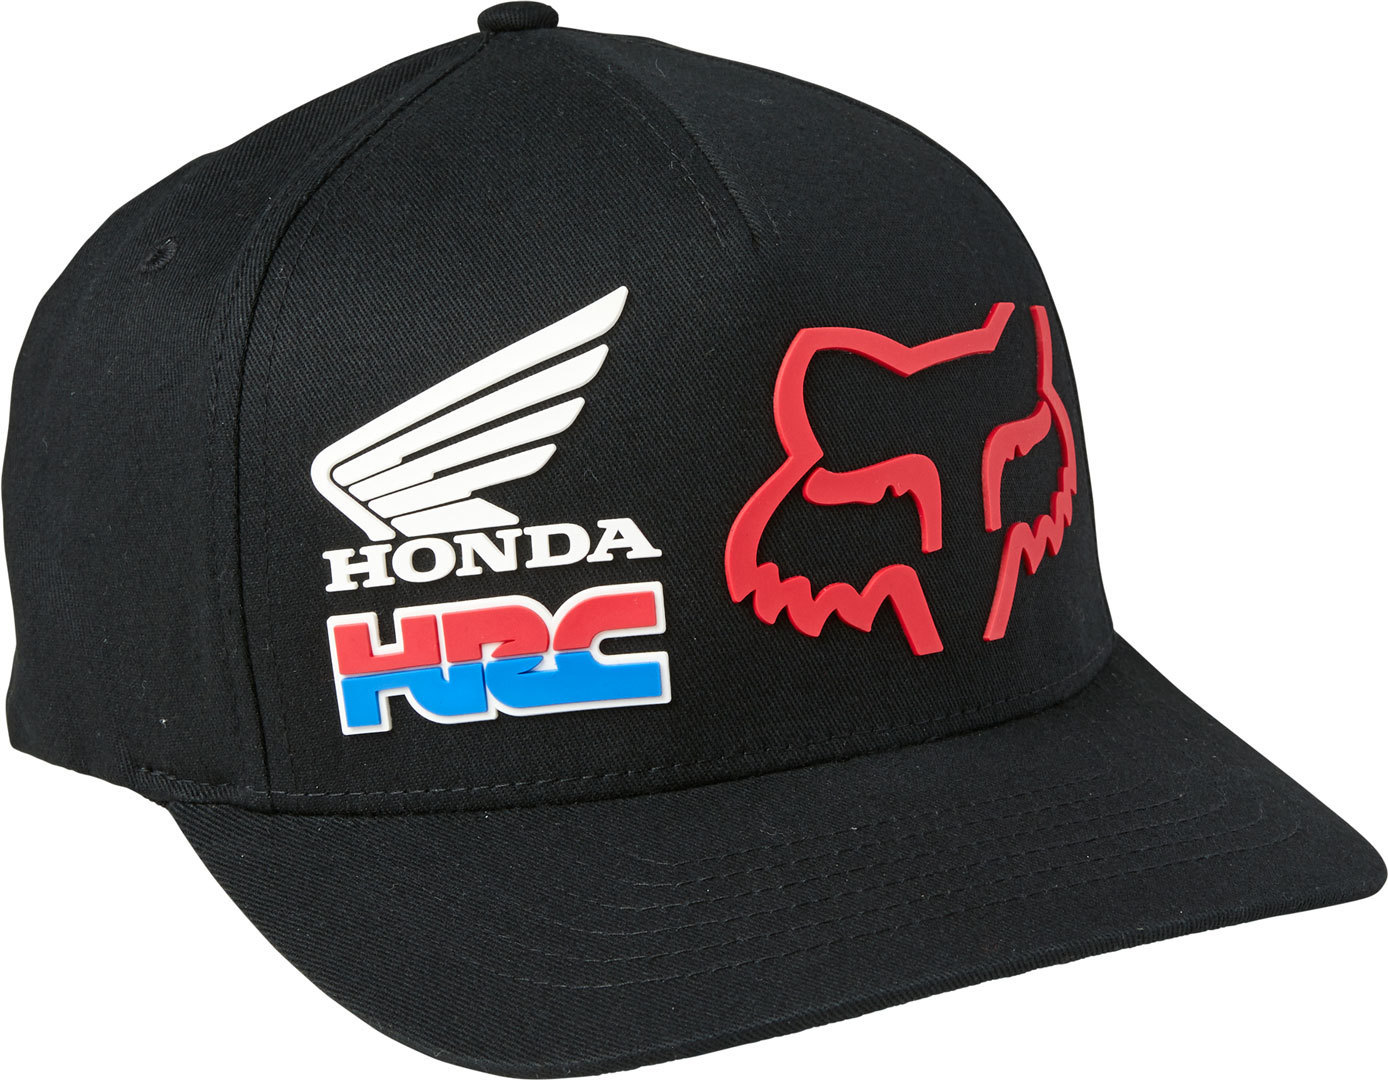 FOX Honda Hrc Flexfit Boné - melhores preços ▷ FC-Moto